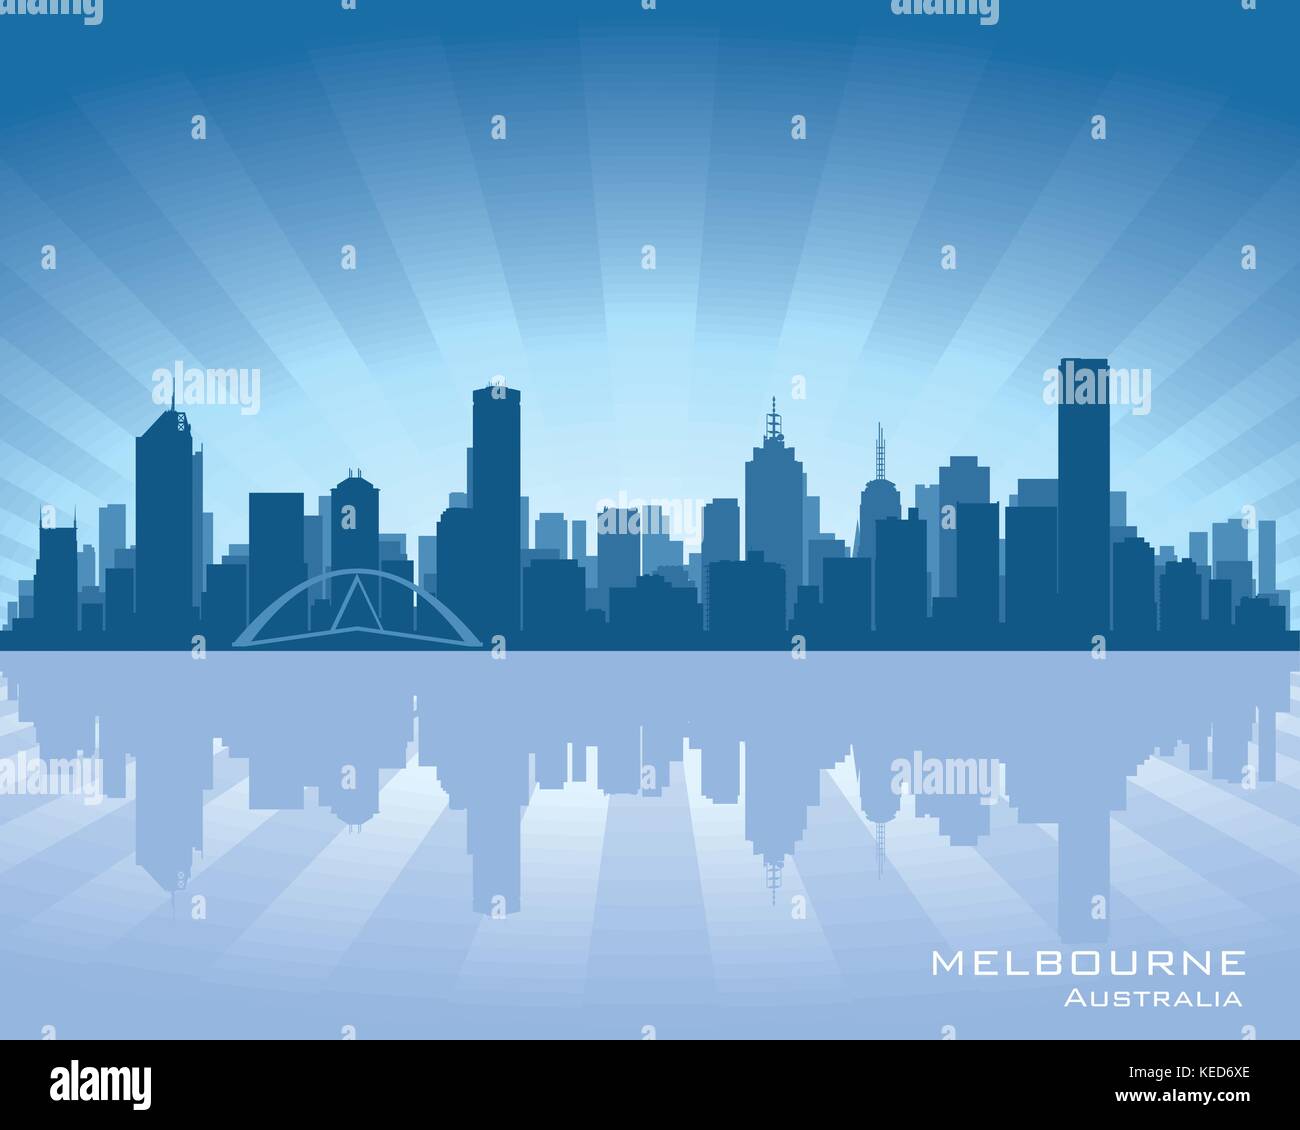 Melbourne, Australien-Skyline-Abbildung mit Spiegelung im Wasser Stock Vektor